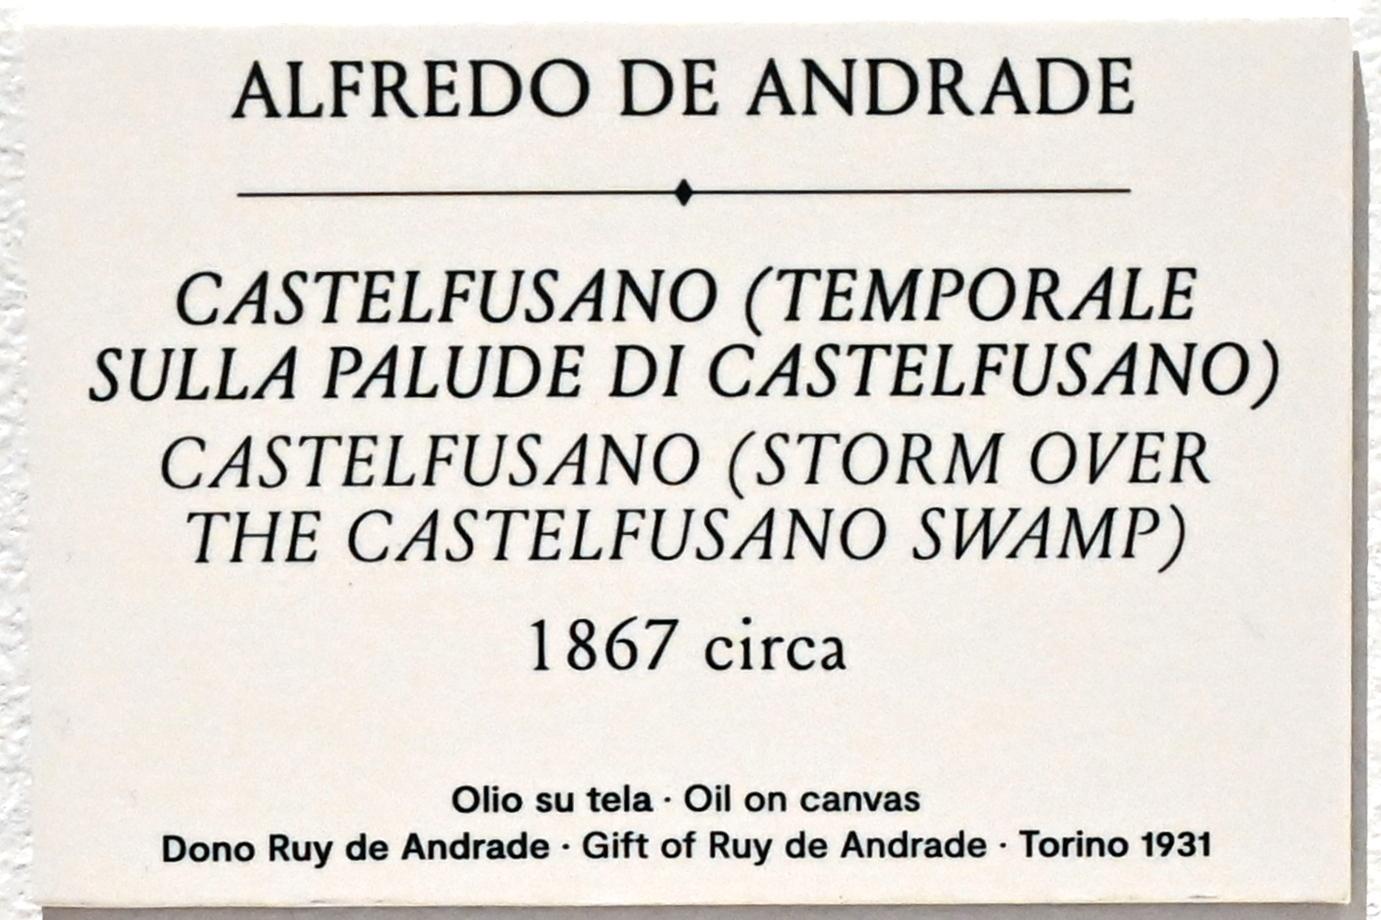 Alfredo d’Andrade (1867–1871), Castelfusano (Sturm am Castelfusano-Sumpf), Turin, GAM Torino, Ausstellung "Natur und Wahrheit" vom 09.07.-17.10.2021, um 1867, Bild 2/3